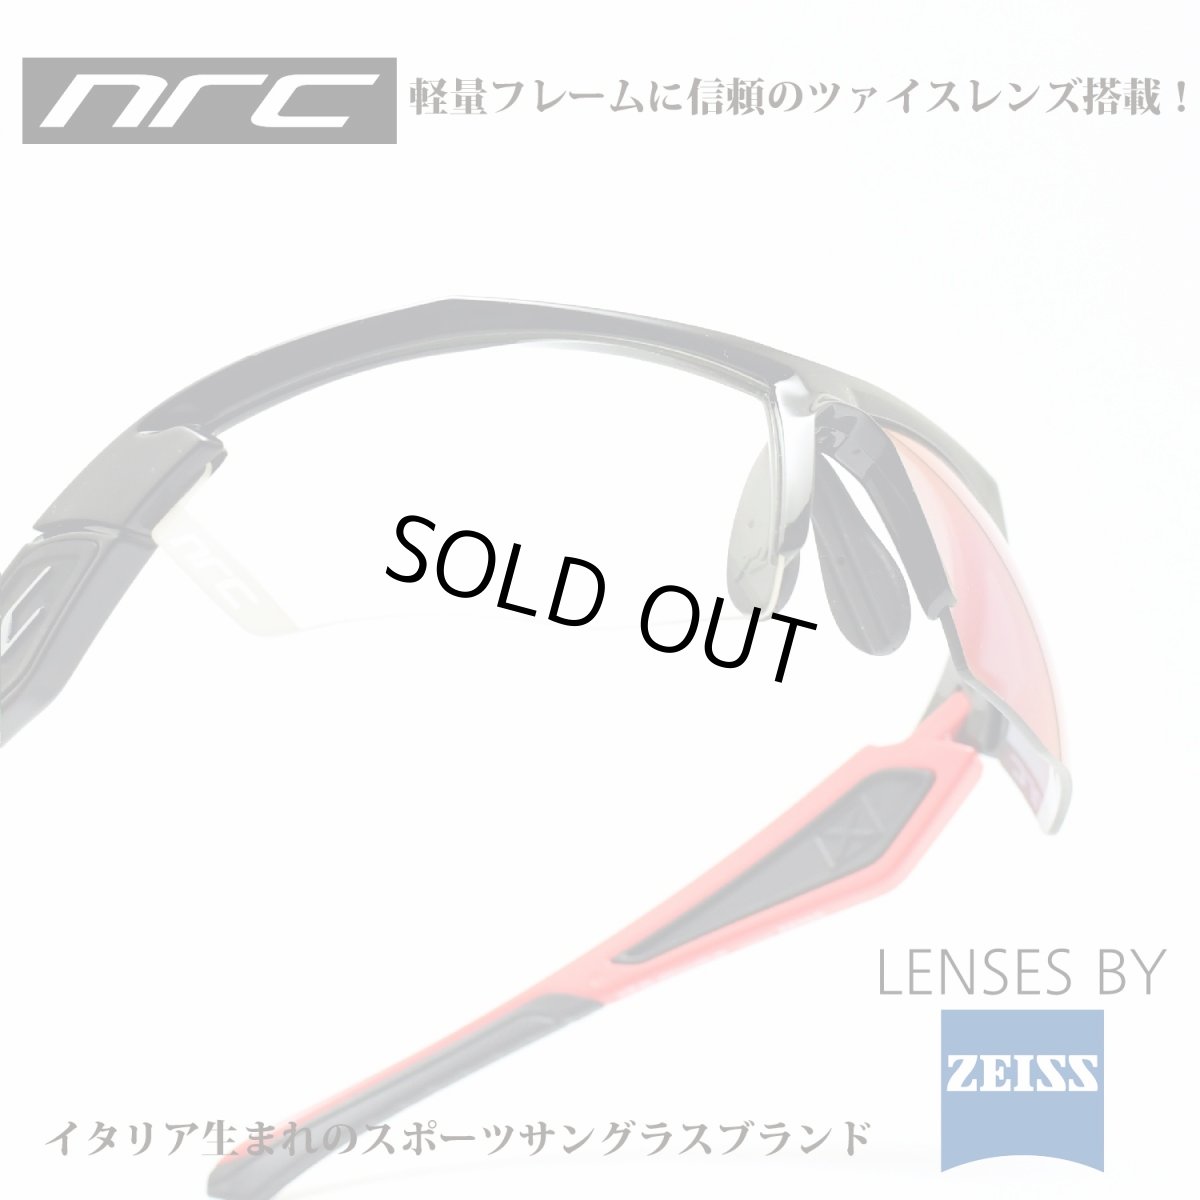 画像1: nrc エヌアールシー X5 BLOCKHAUS/GRAY RED MIRROR  メガネ 眼鏡 めがね メンズ レディース おしゃれ ブランド 人気 おすすめ フレーム 流行り 度付き レンズ サングラス (1)